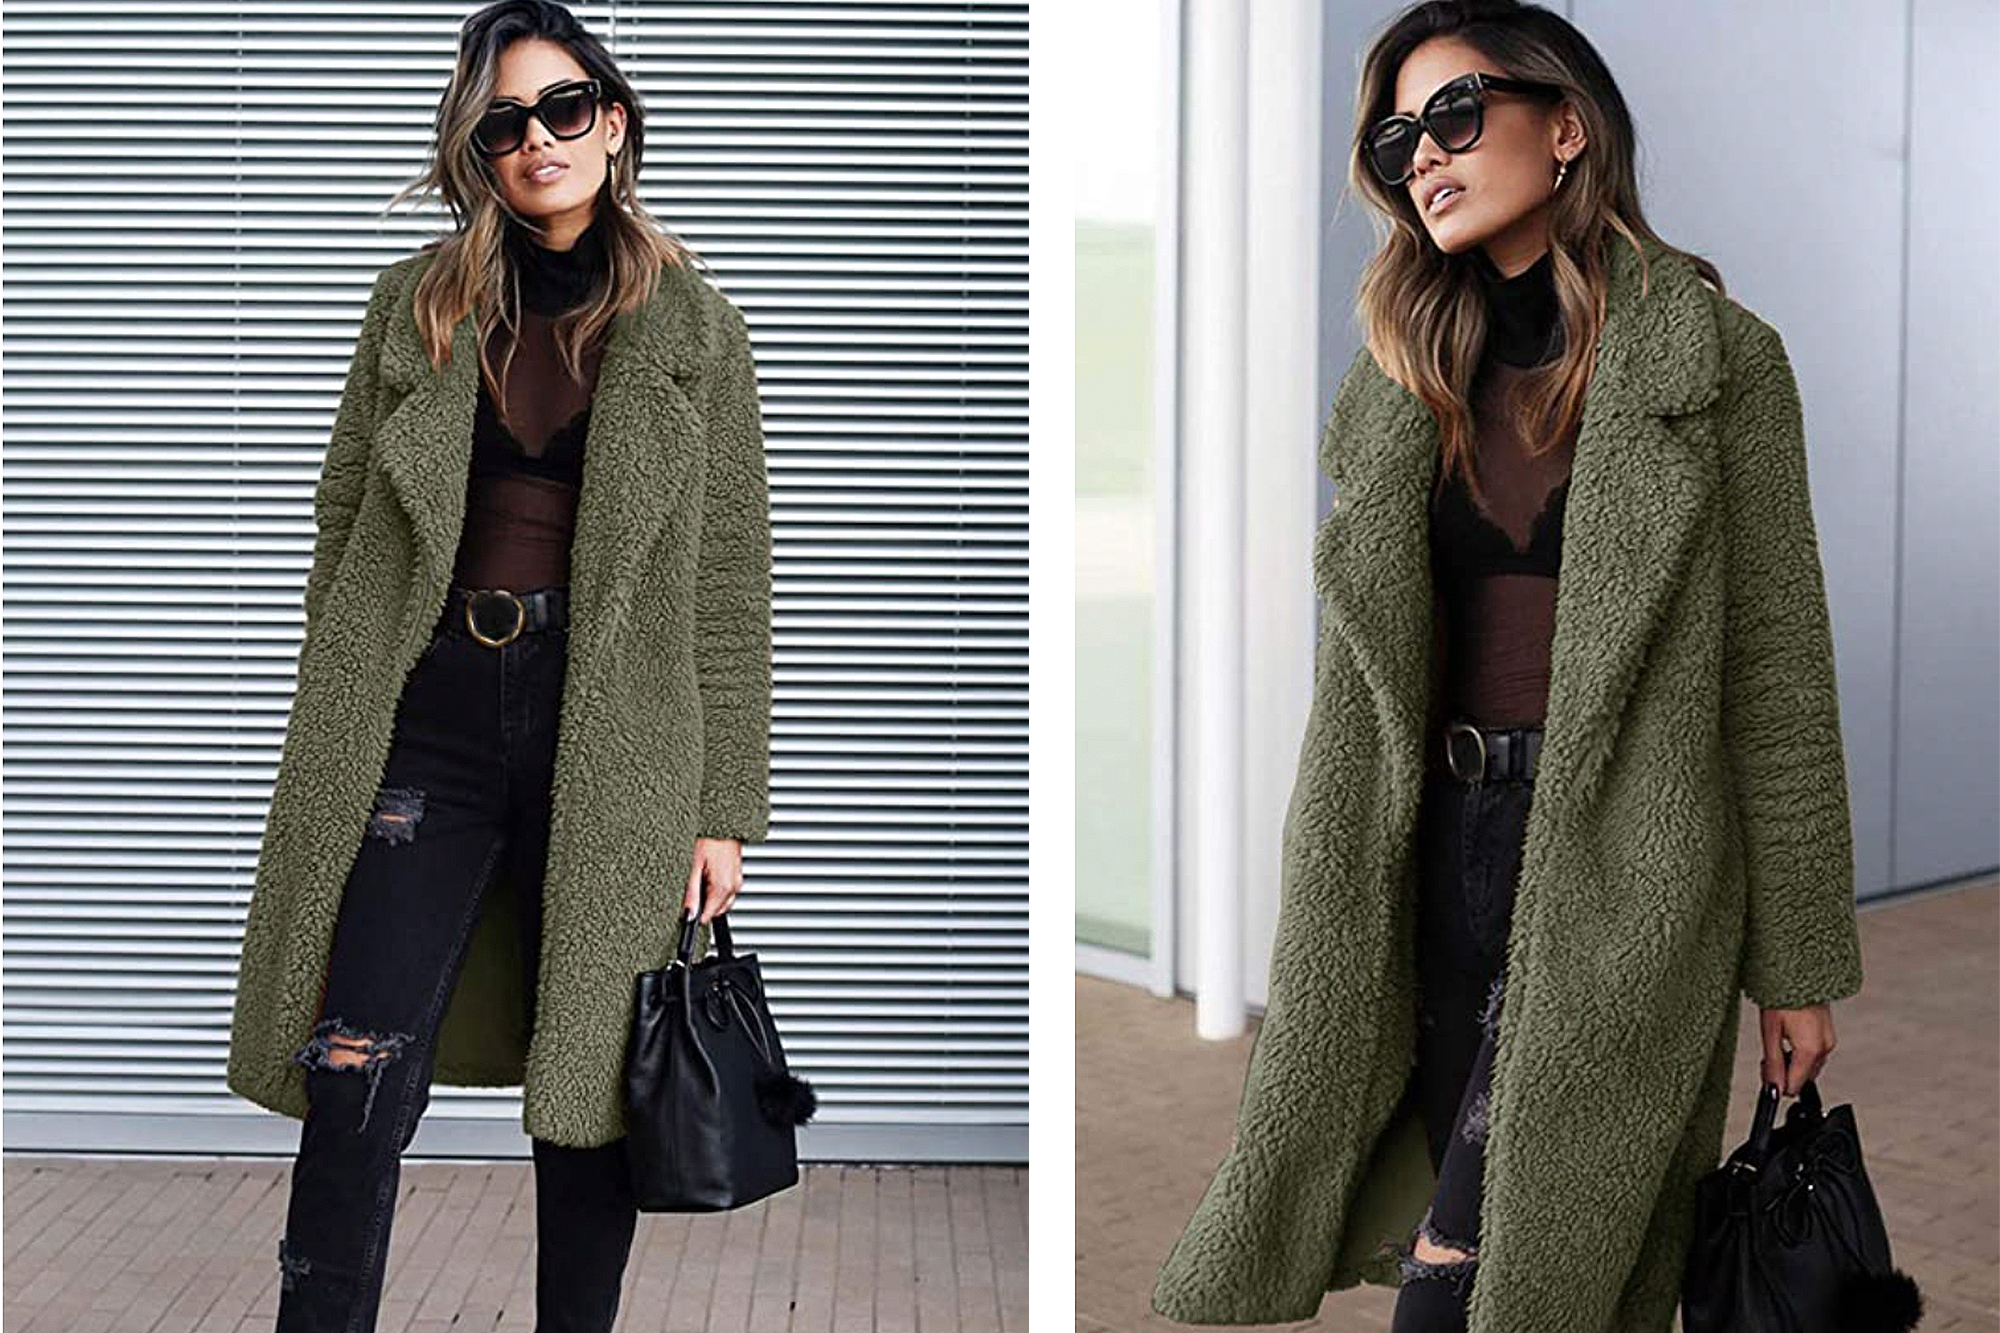 Womens Coats Lapel Fuzzy Fleece Overcoats Fashion Open Front Long Cardigan Faux Fur Warm Winter Outwear Jackets